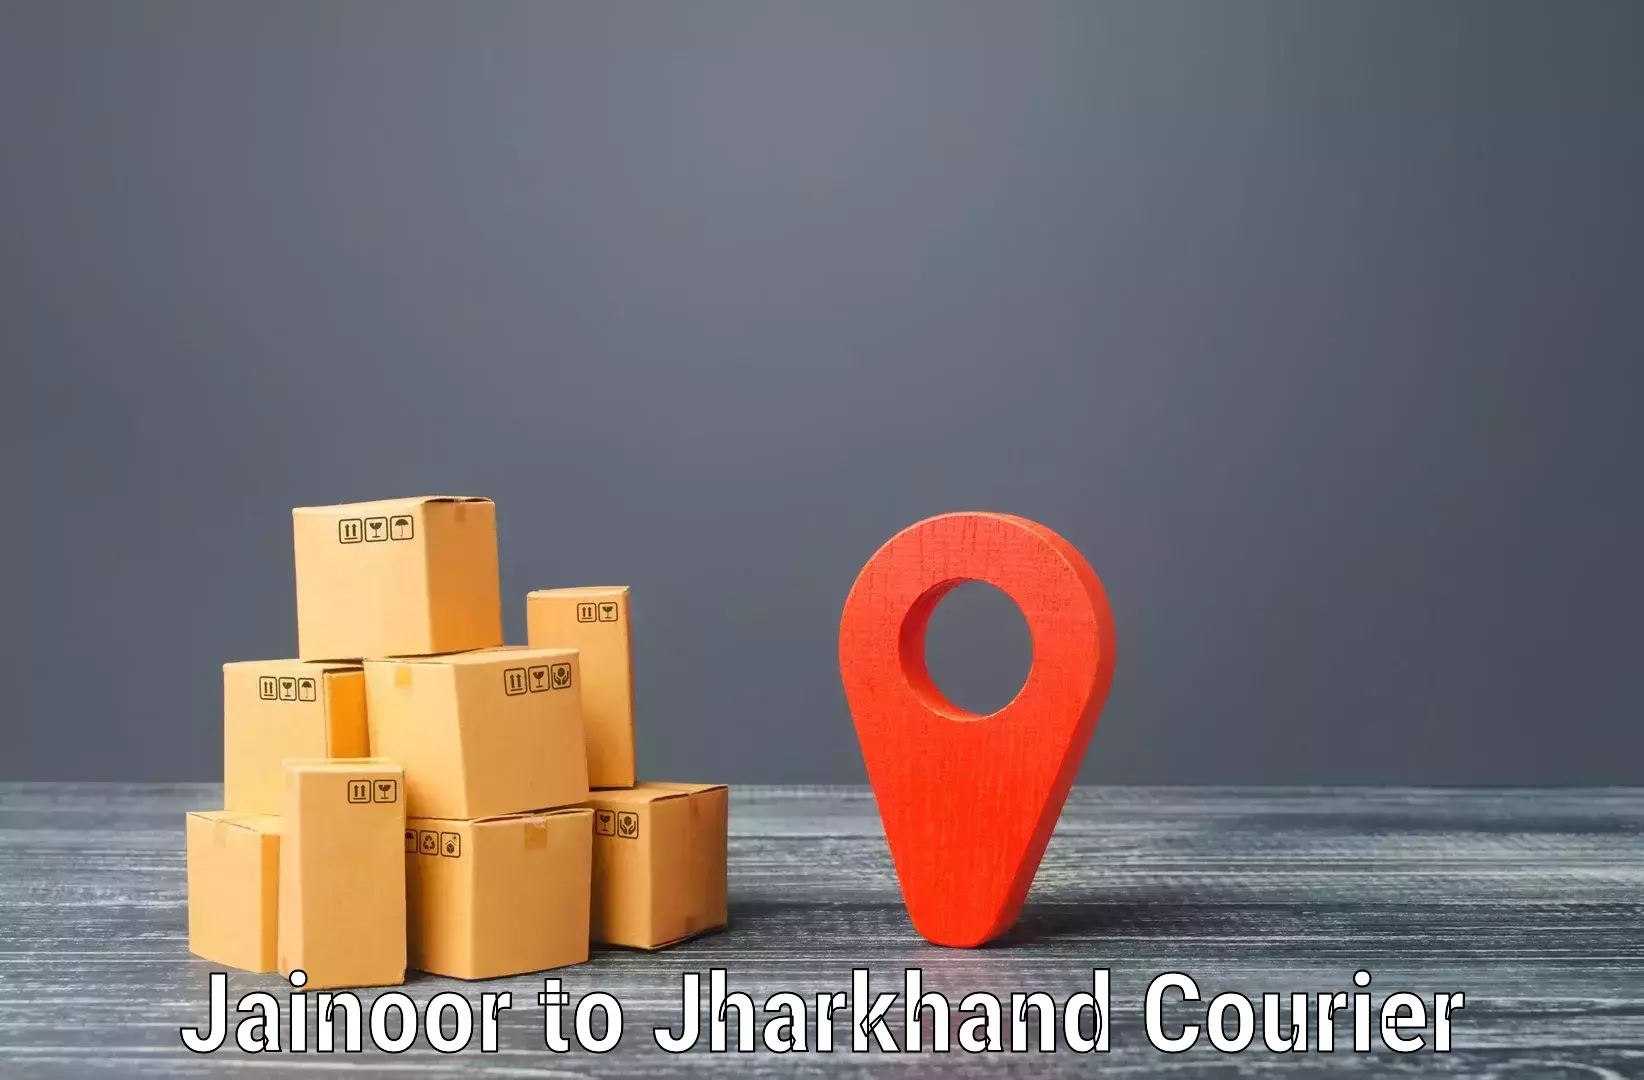 Efficient parcel transport Jainoor to Garhwa